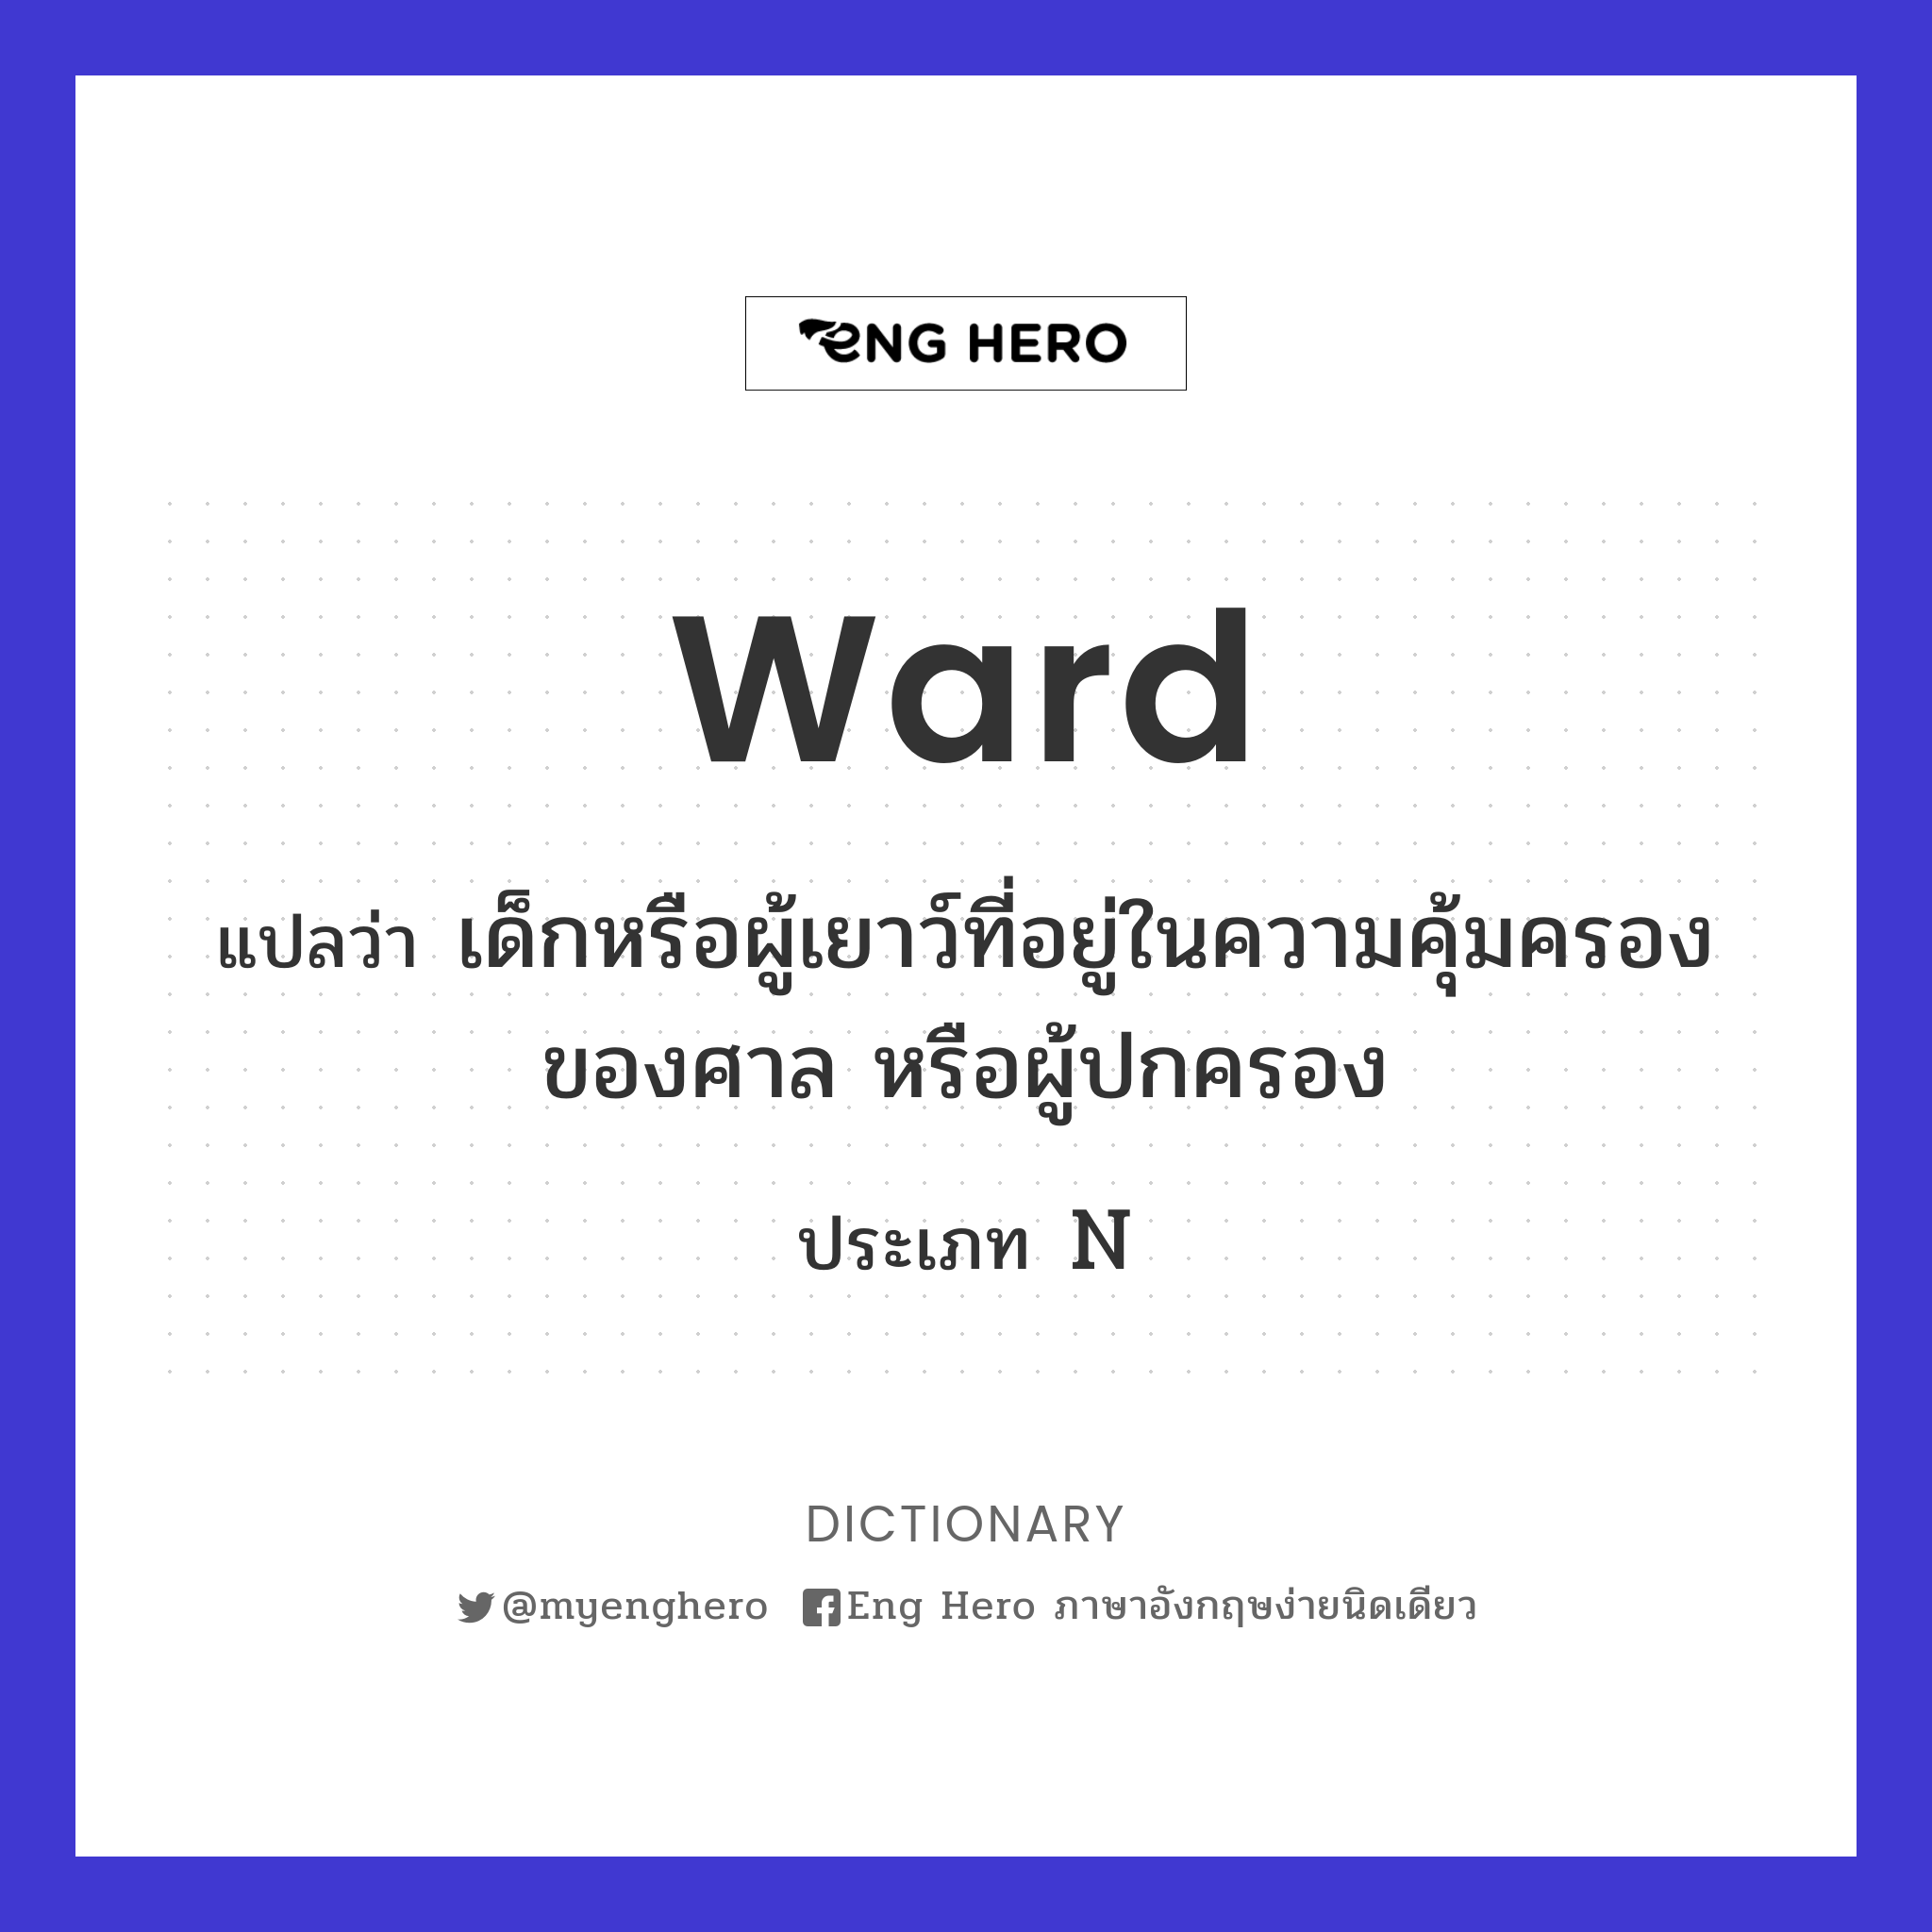 ward